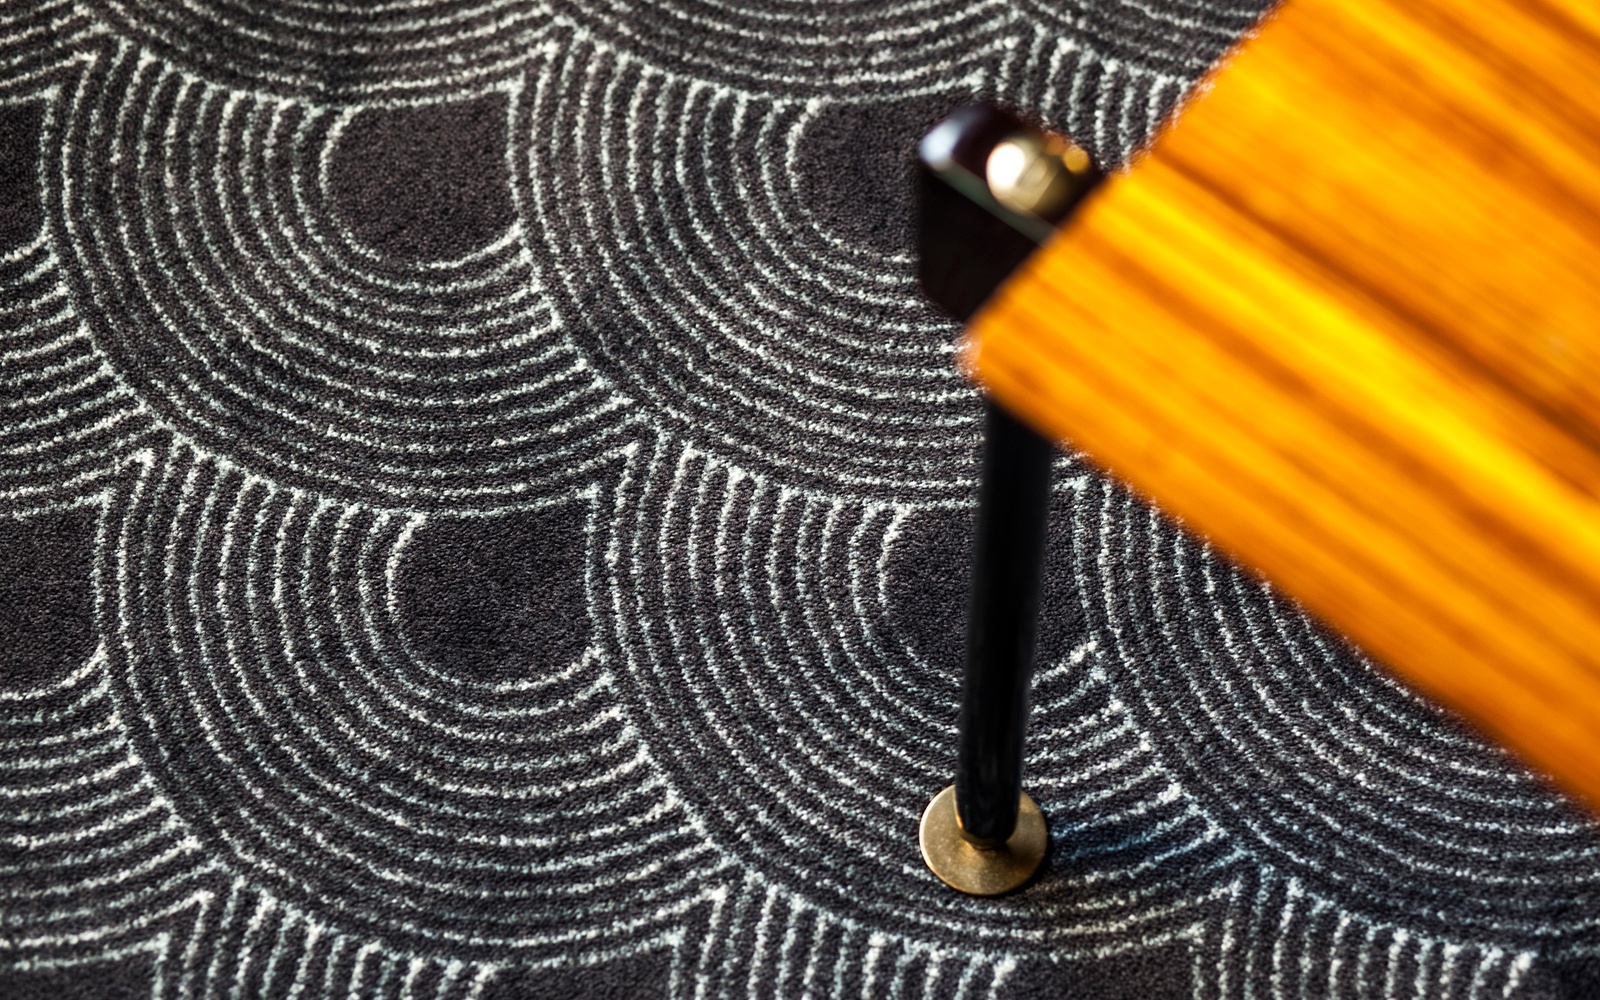 Hotelteppich: Gemusterte Teppiche können besondere Wirkungen in der Raumgestaltung erzeugen